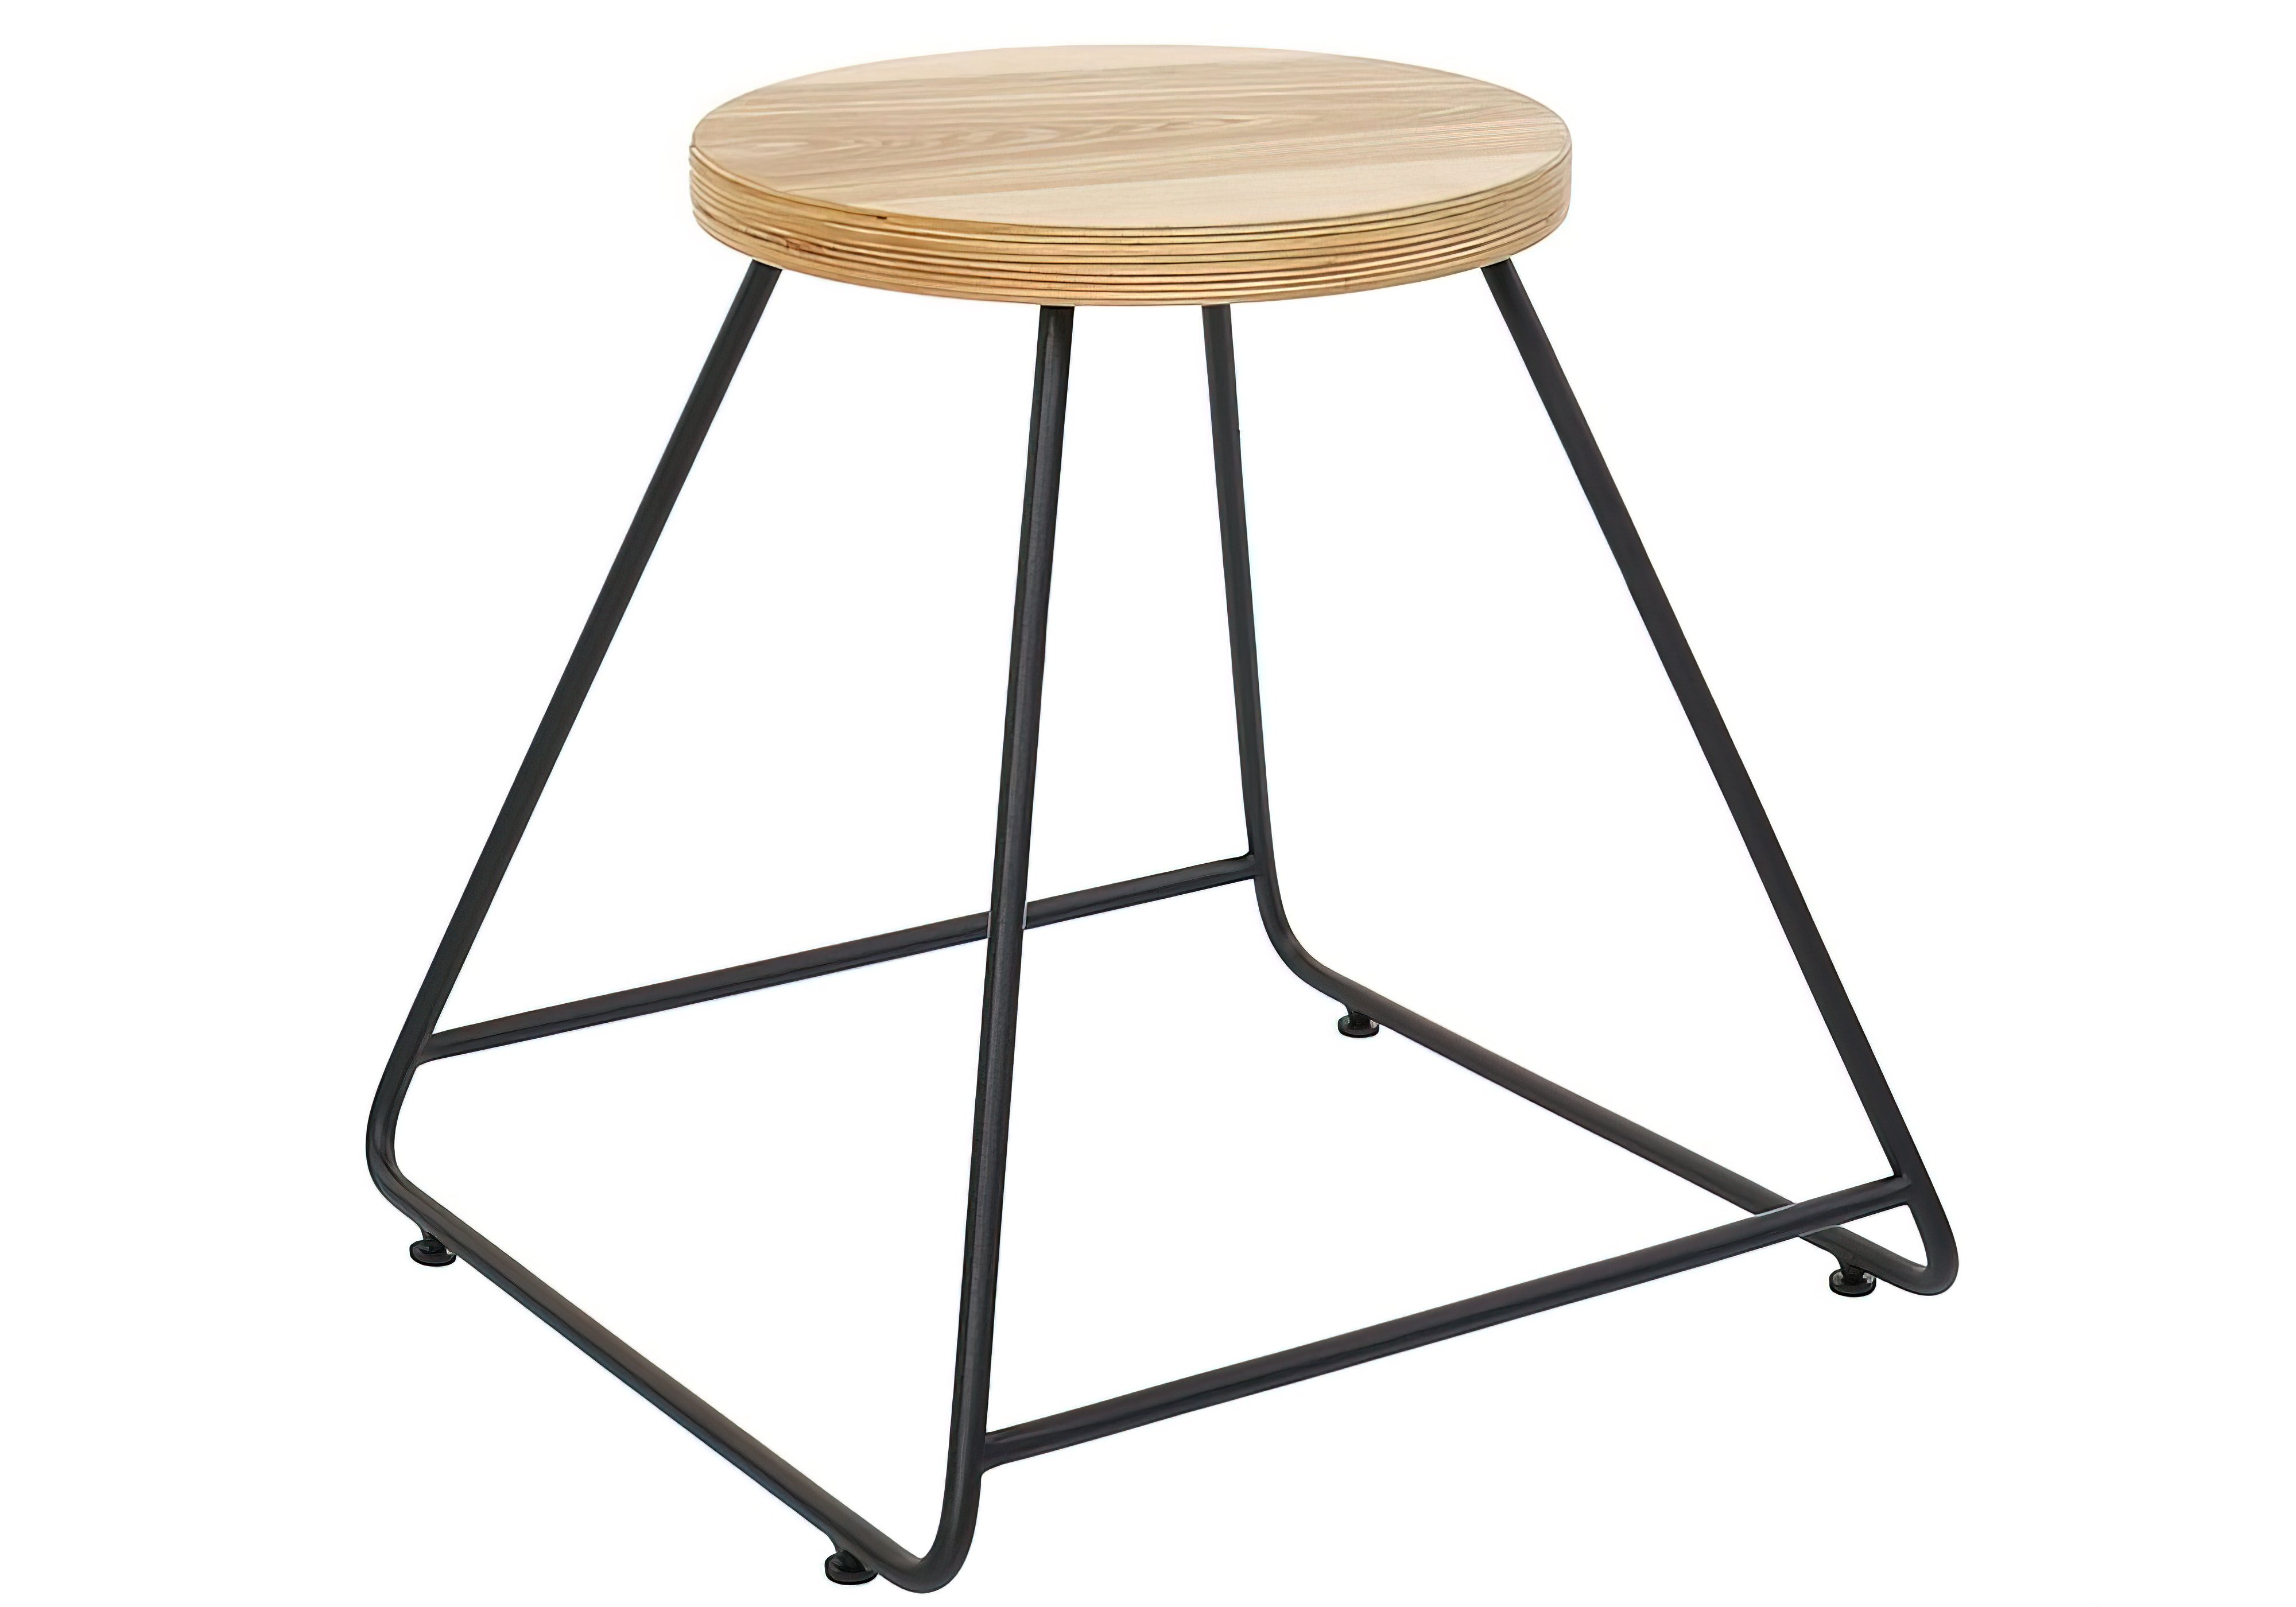 Кухонный стул Simple Hairpinlegs, Тип Обеденный, Высота 45см, Ширина сиденья 32см